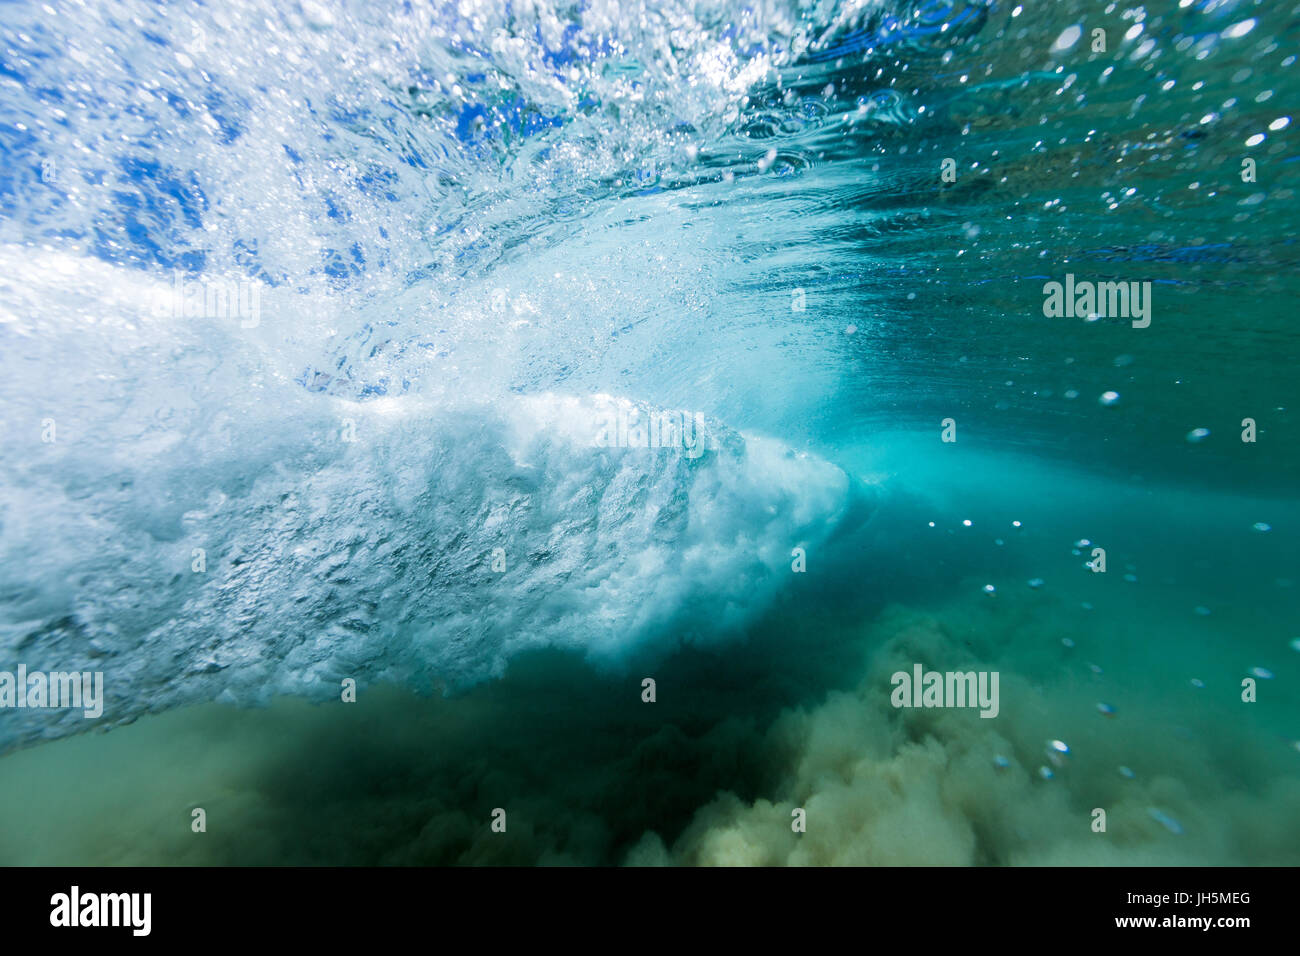 Eine brechende Welle bildet einen Wirbel im kristallklaren Meerwasser in diesem Unterwasser-Bild. Stockfoto